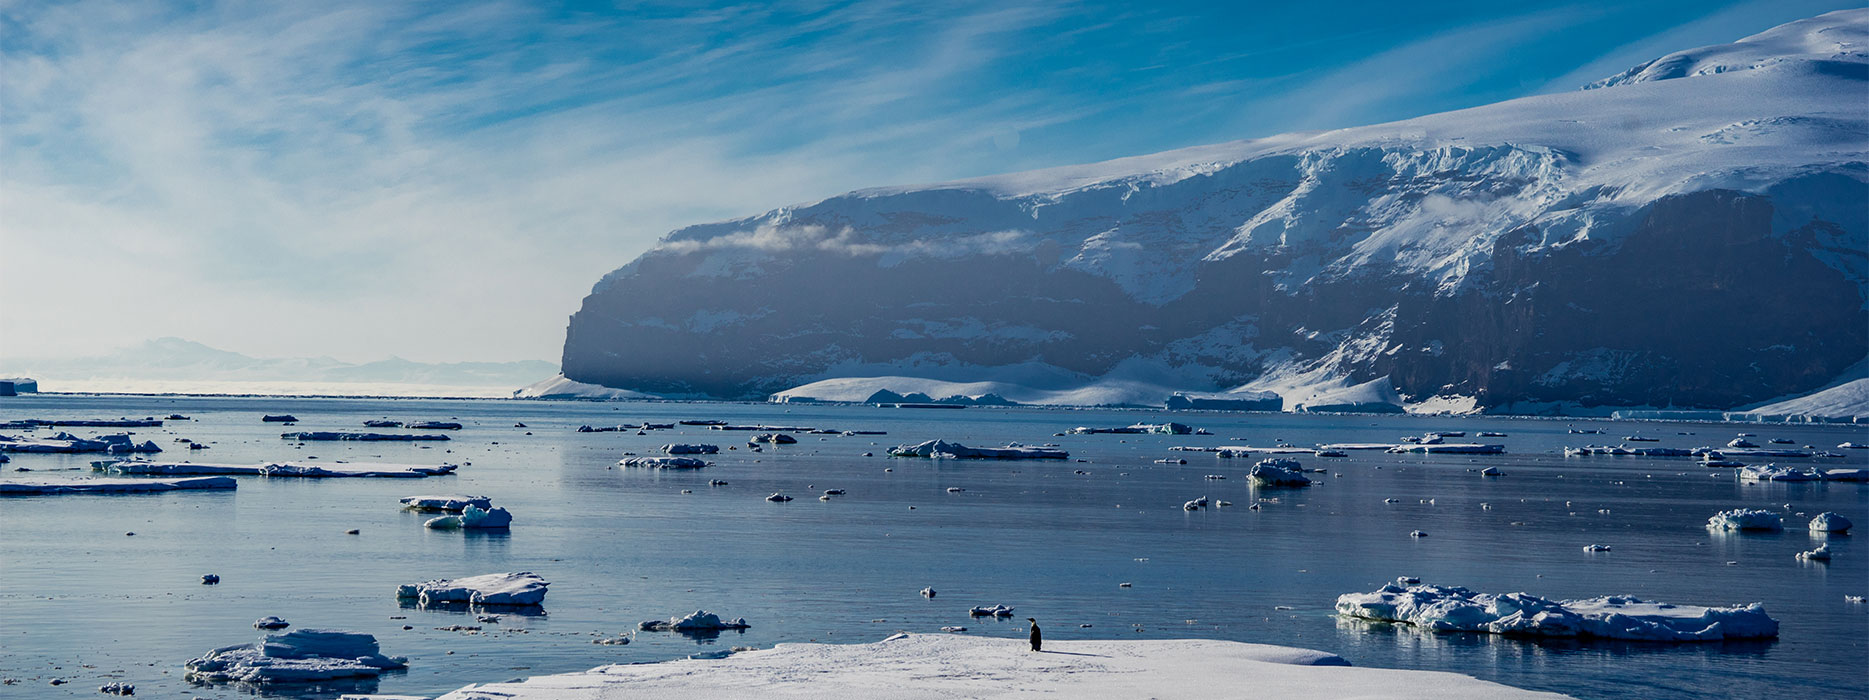 Coulman Island in Antarctica